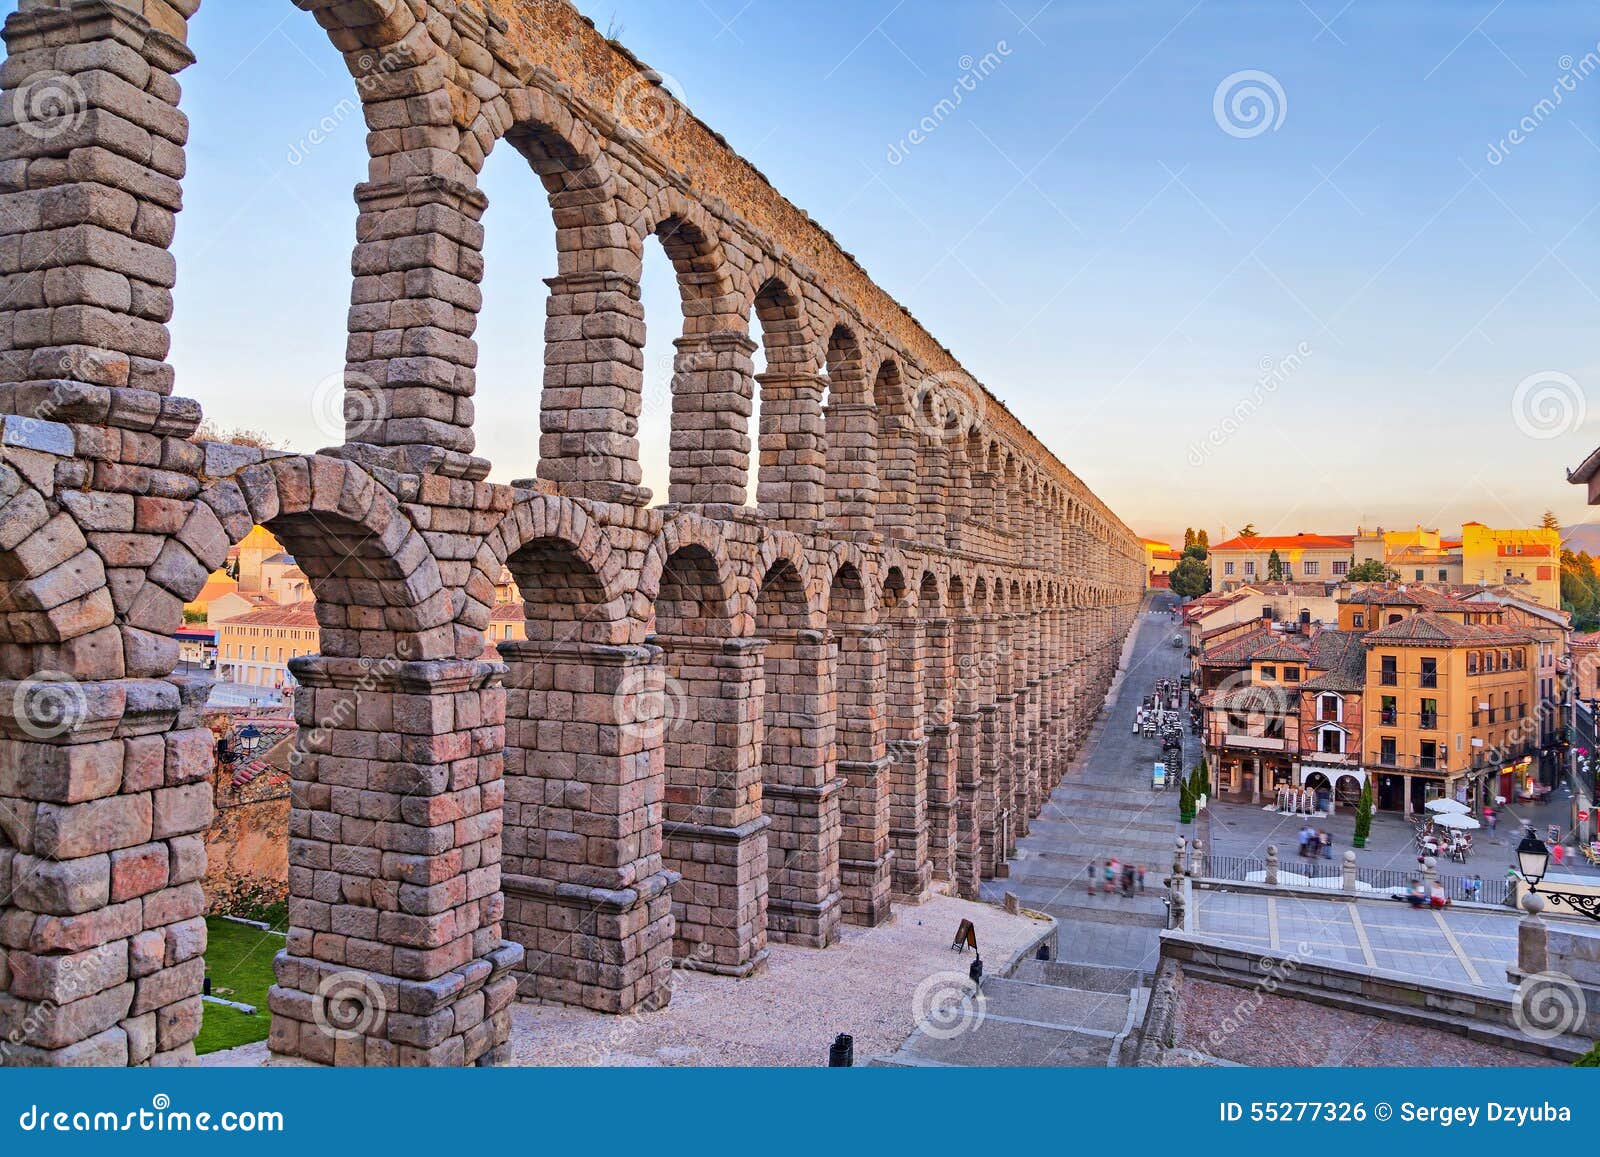 ancient roman aqueduct in segovia, spain